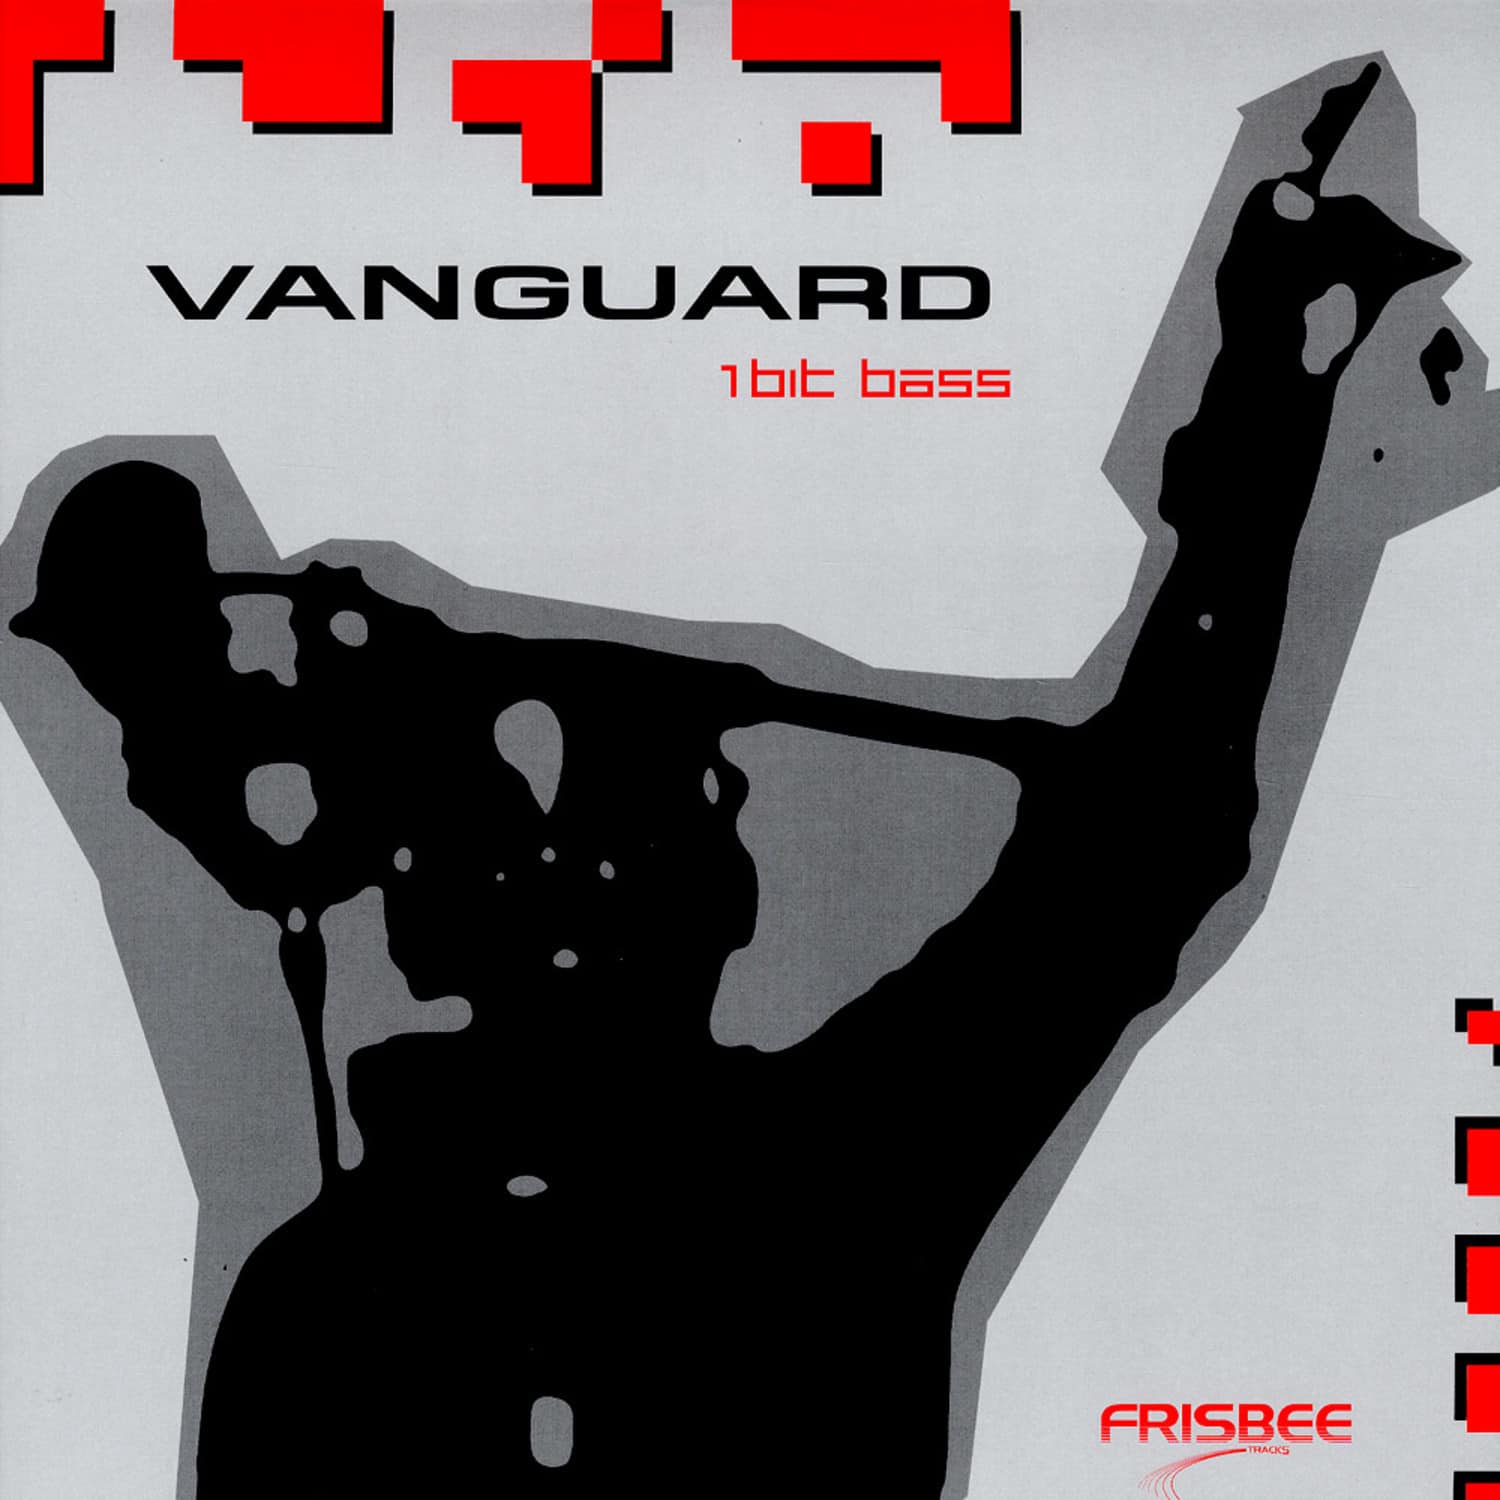 Vanguard - 1 BIT BASS 